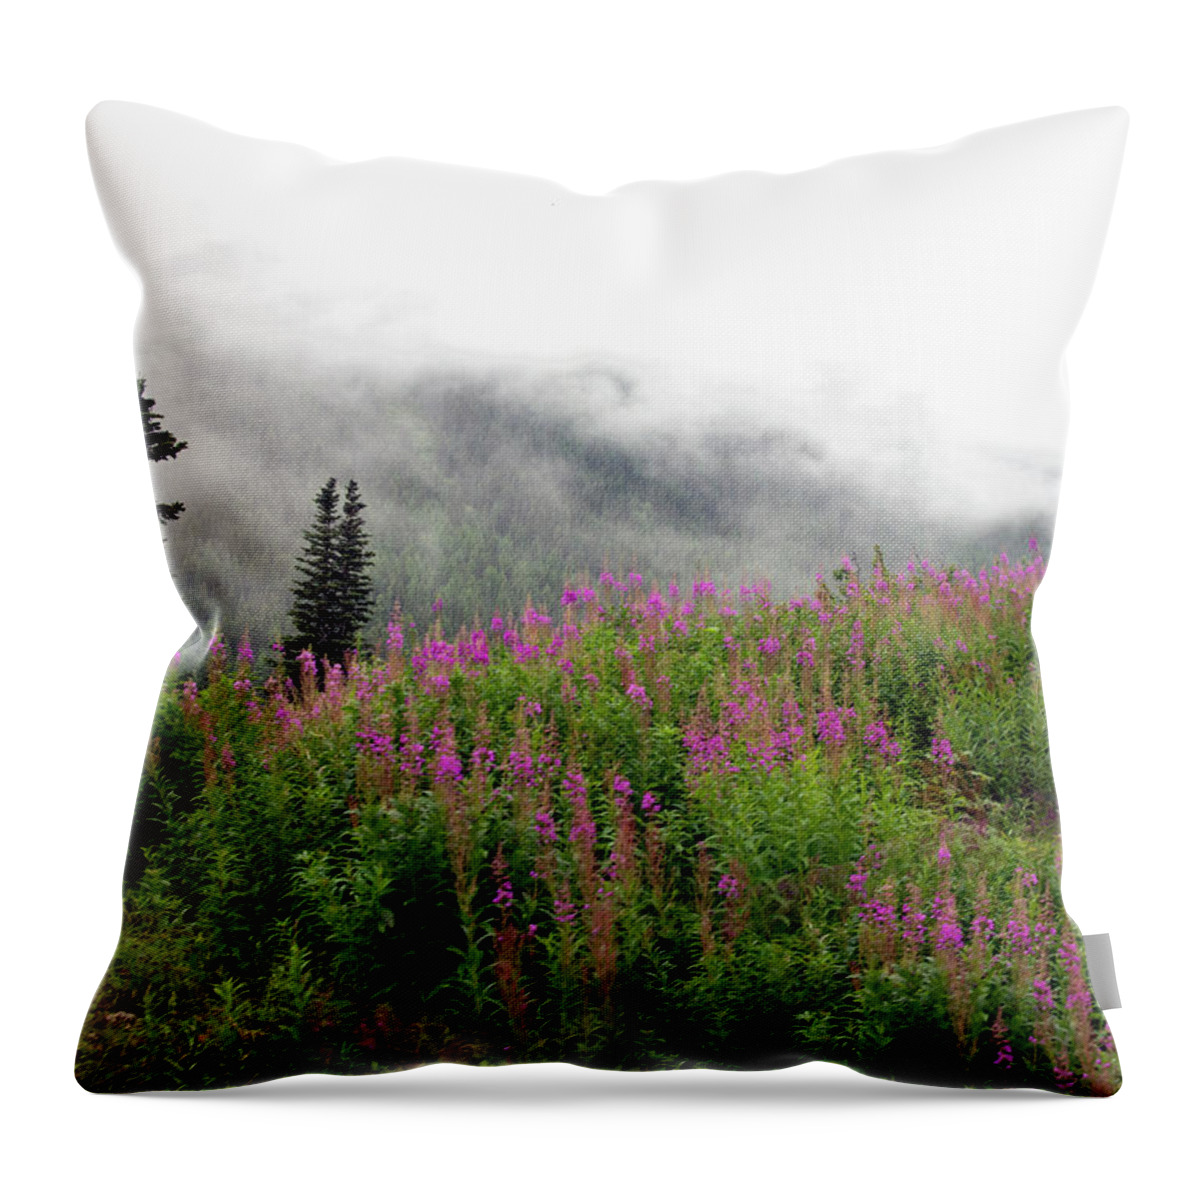 Alaska Throw Pillow featuring the photograph Alaska Mountain Wildflowers by Karen Zuk Rosenblatt